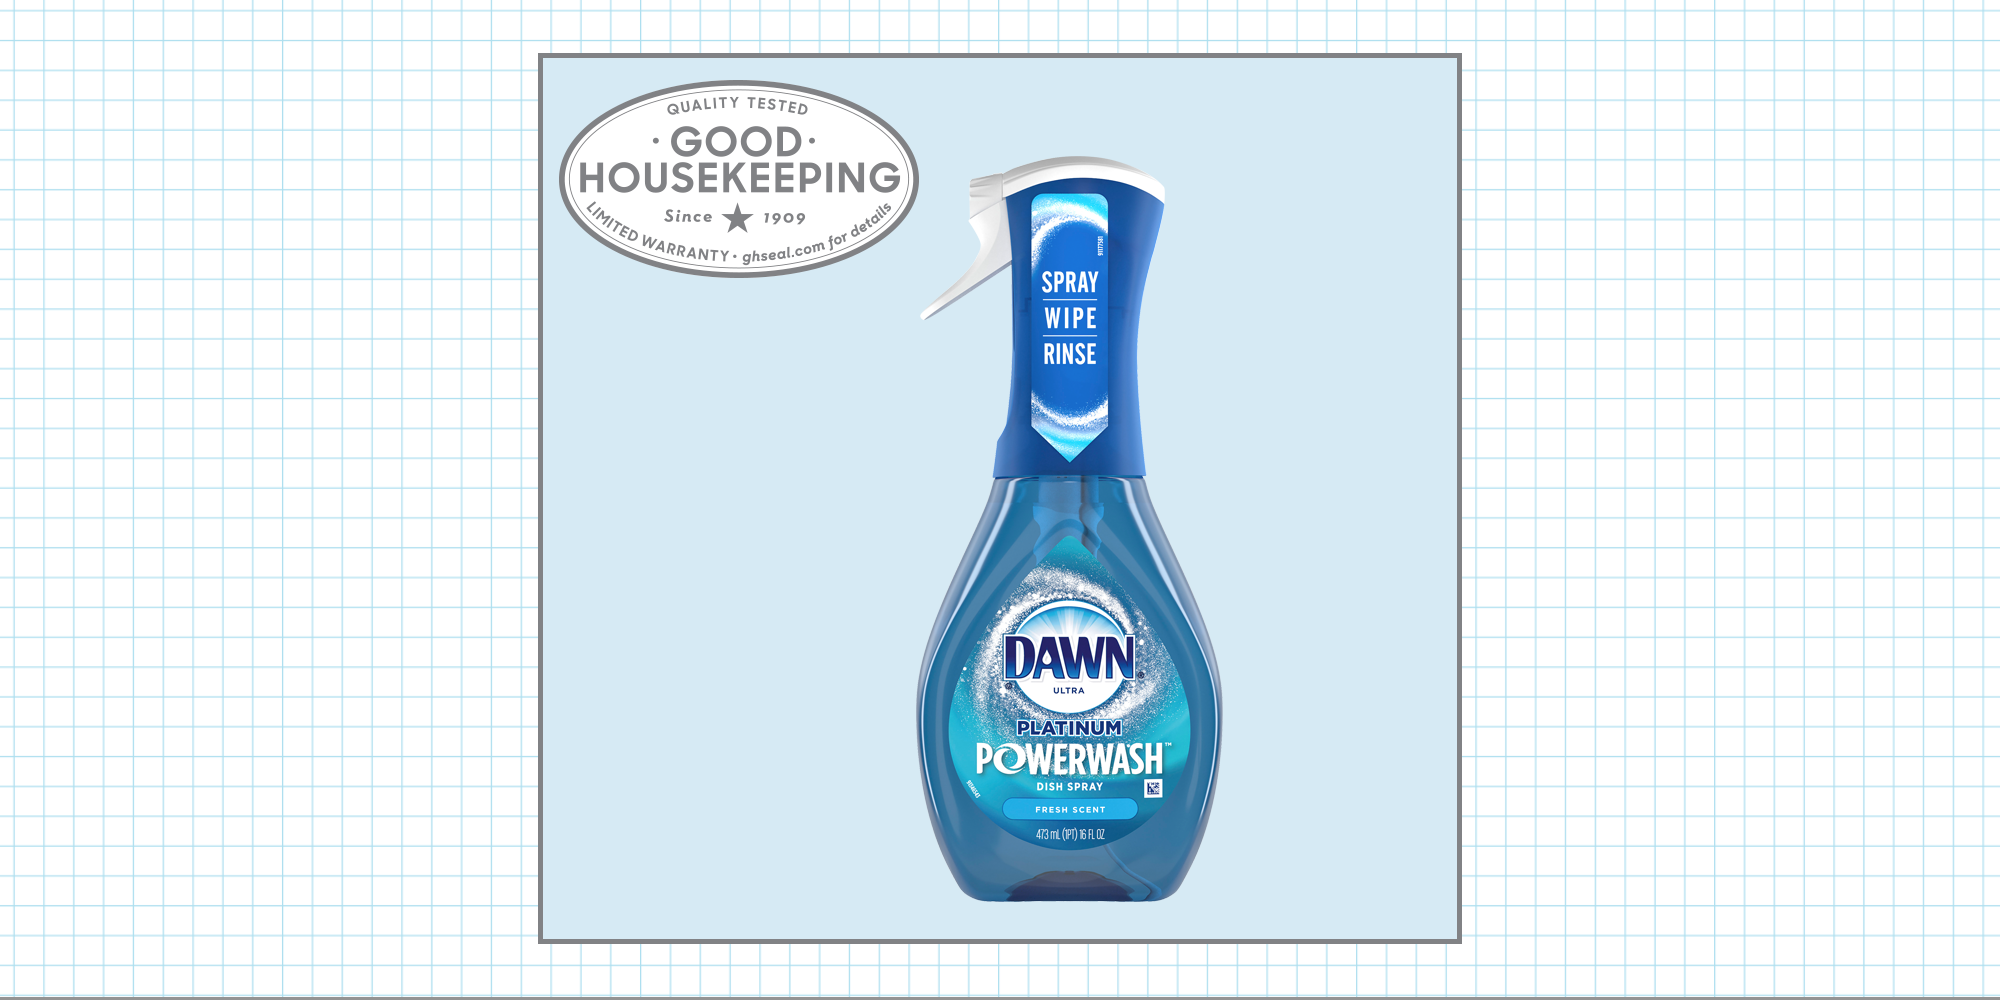 Dawn Platinum Powerwash Dish Soap Review